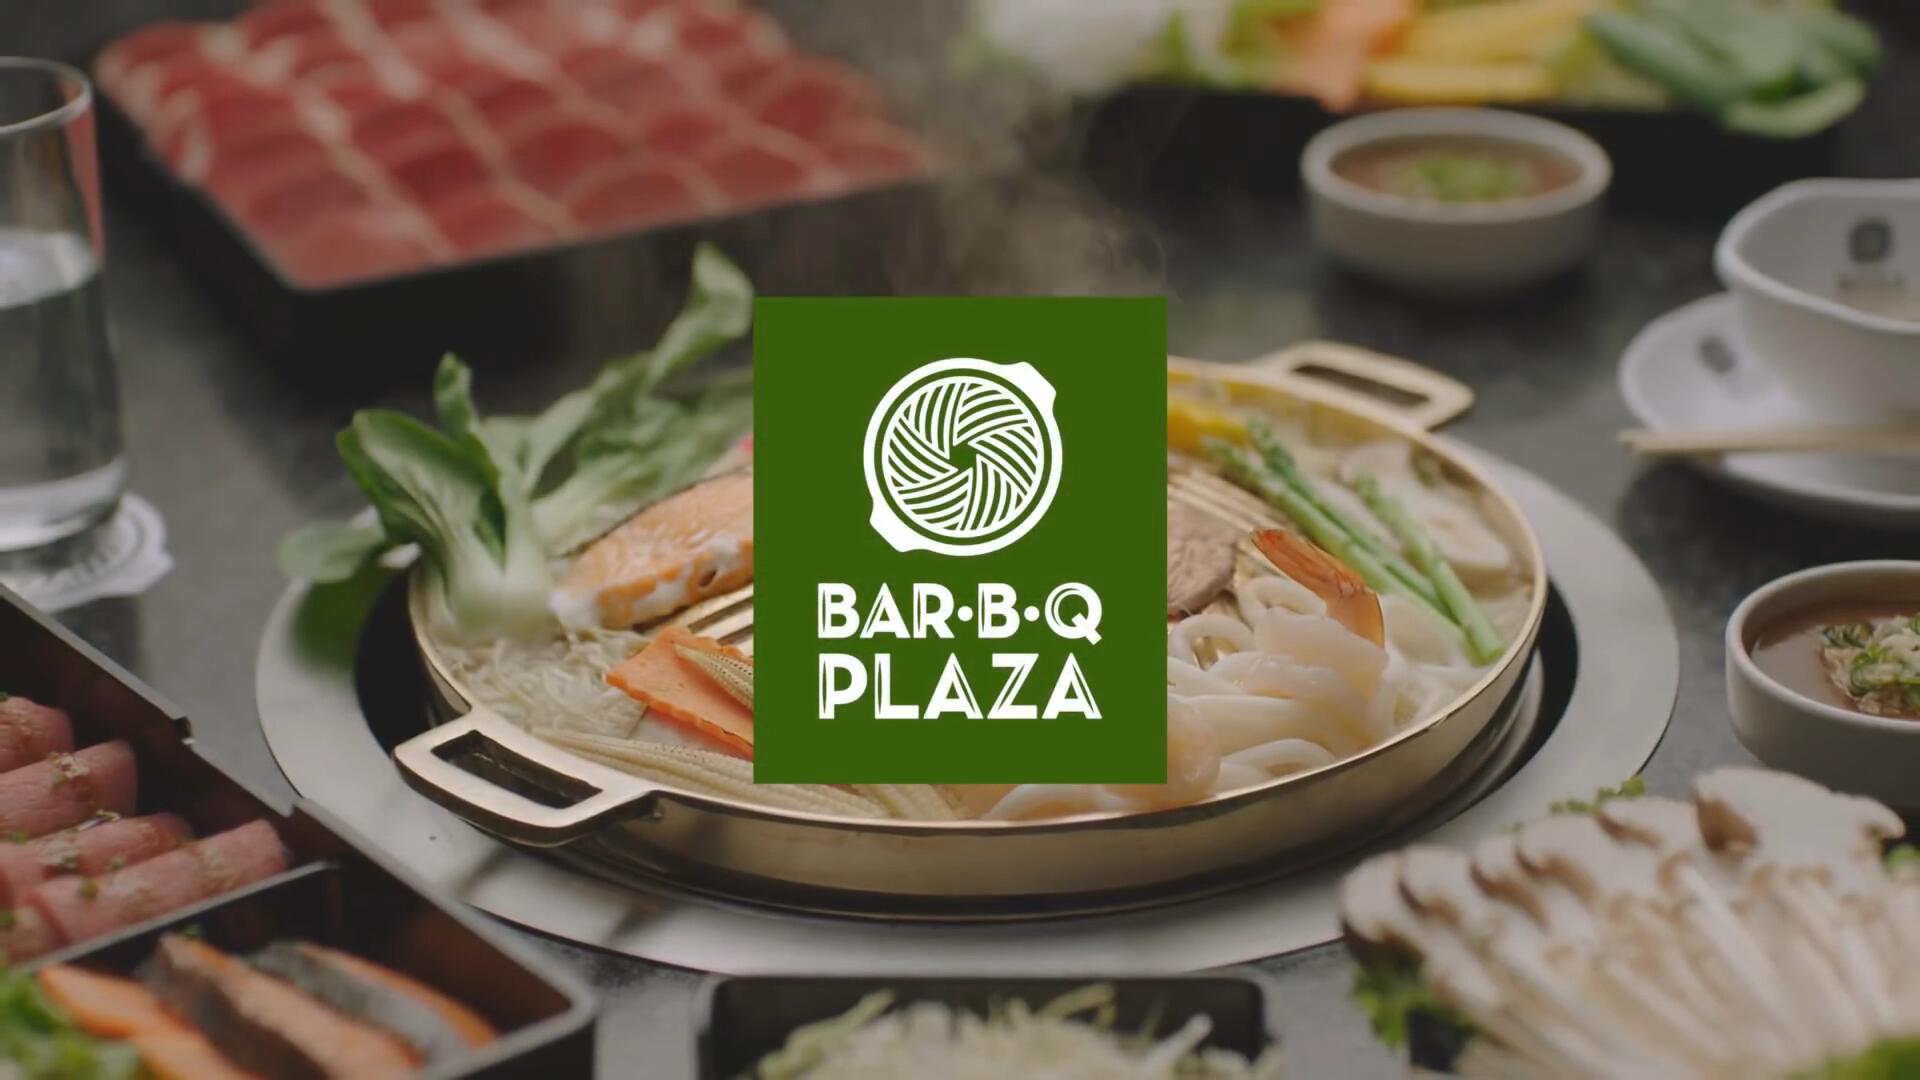 泰国 Bar B Q Plaza餐厅公益广告《物尽其用》(中文字幕)